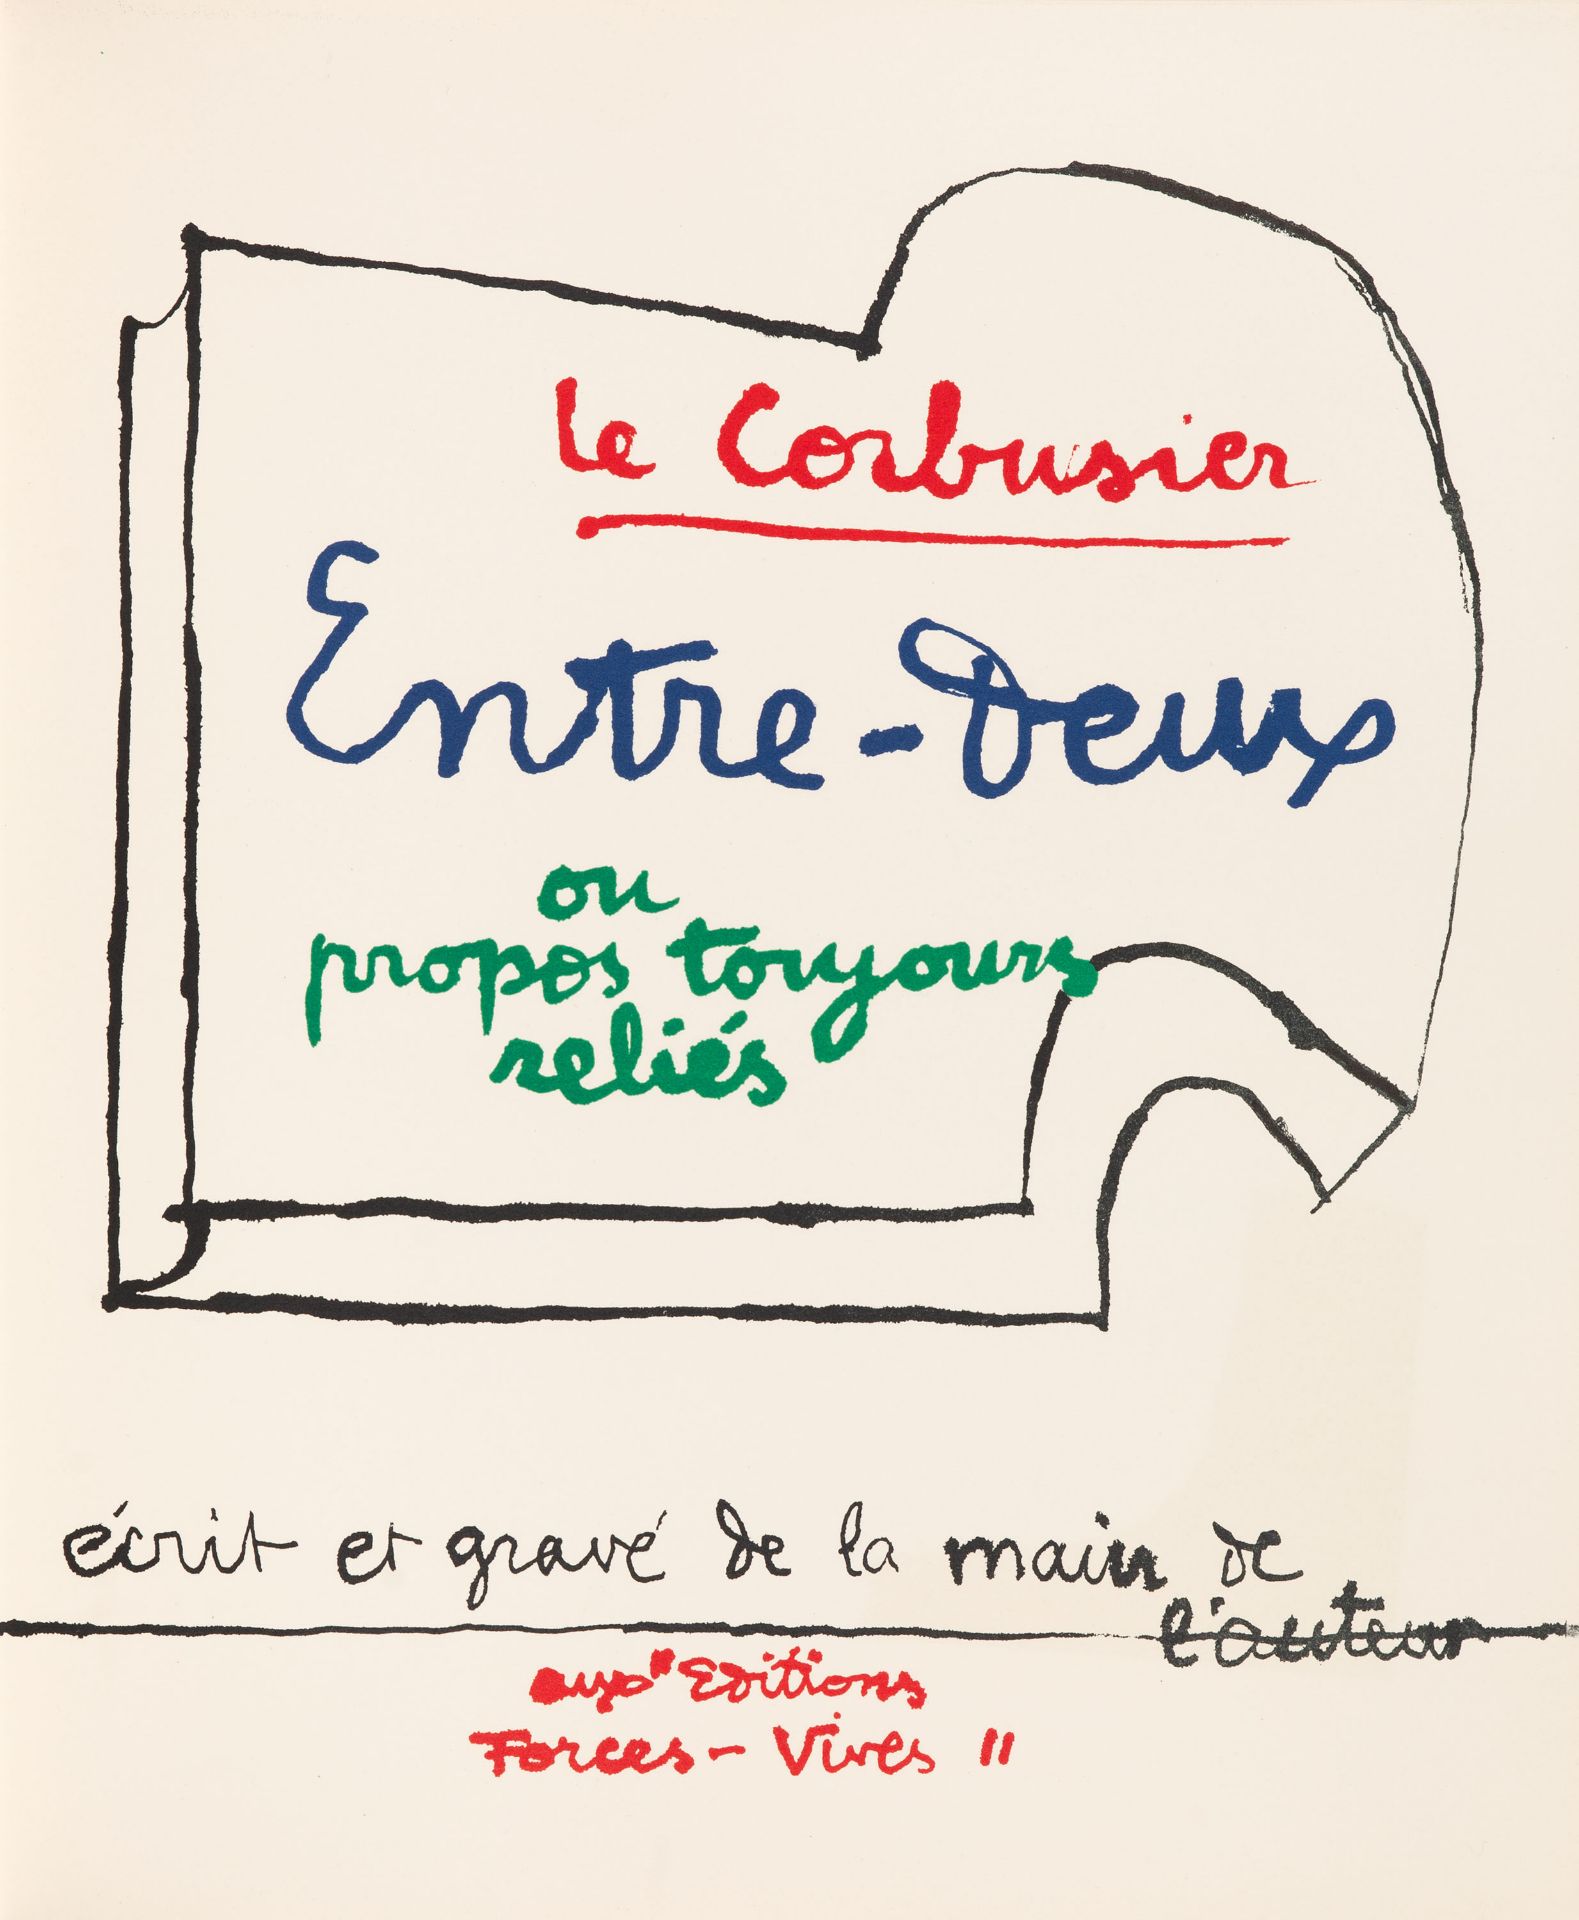 Le Corbusier, Entre-deux ou propos toujours reliés. Paris 1964. - Ex. HC 12.